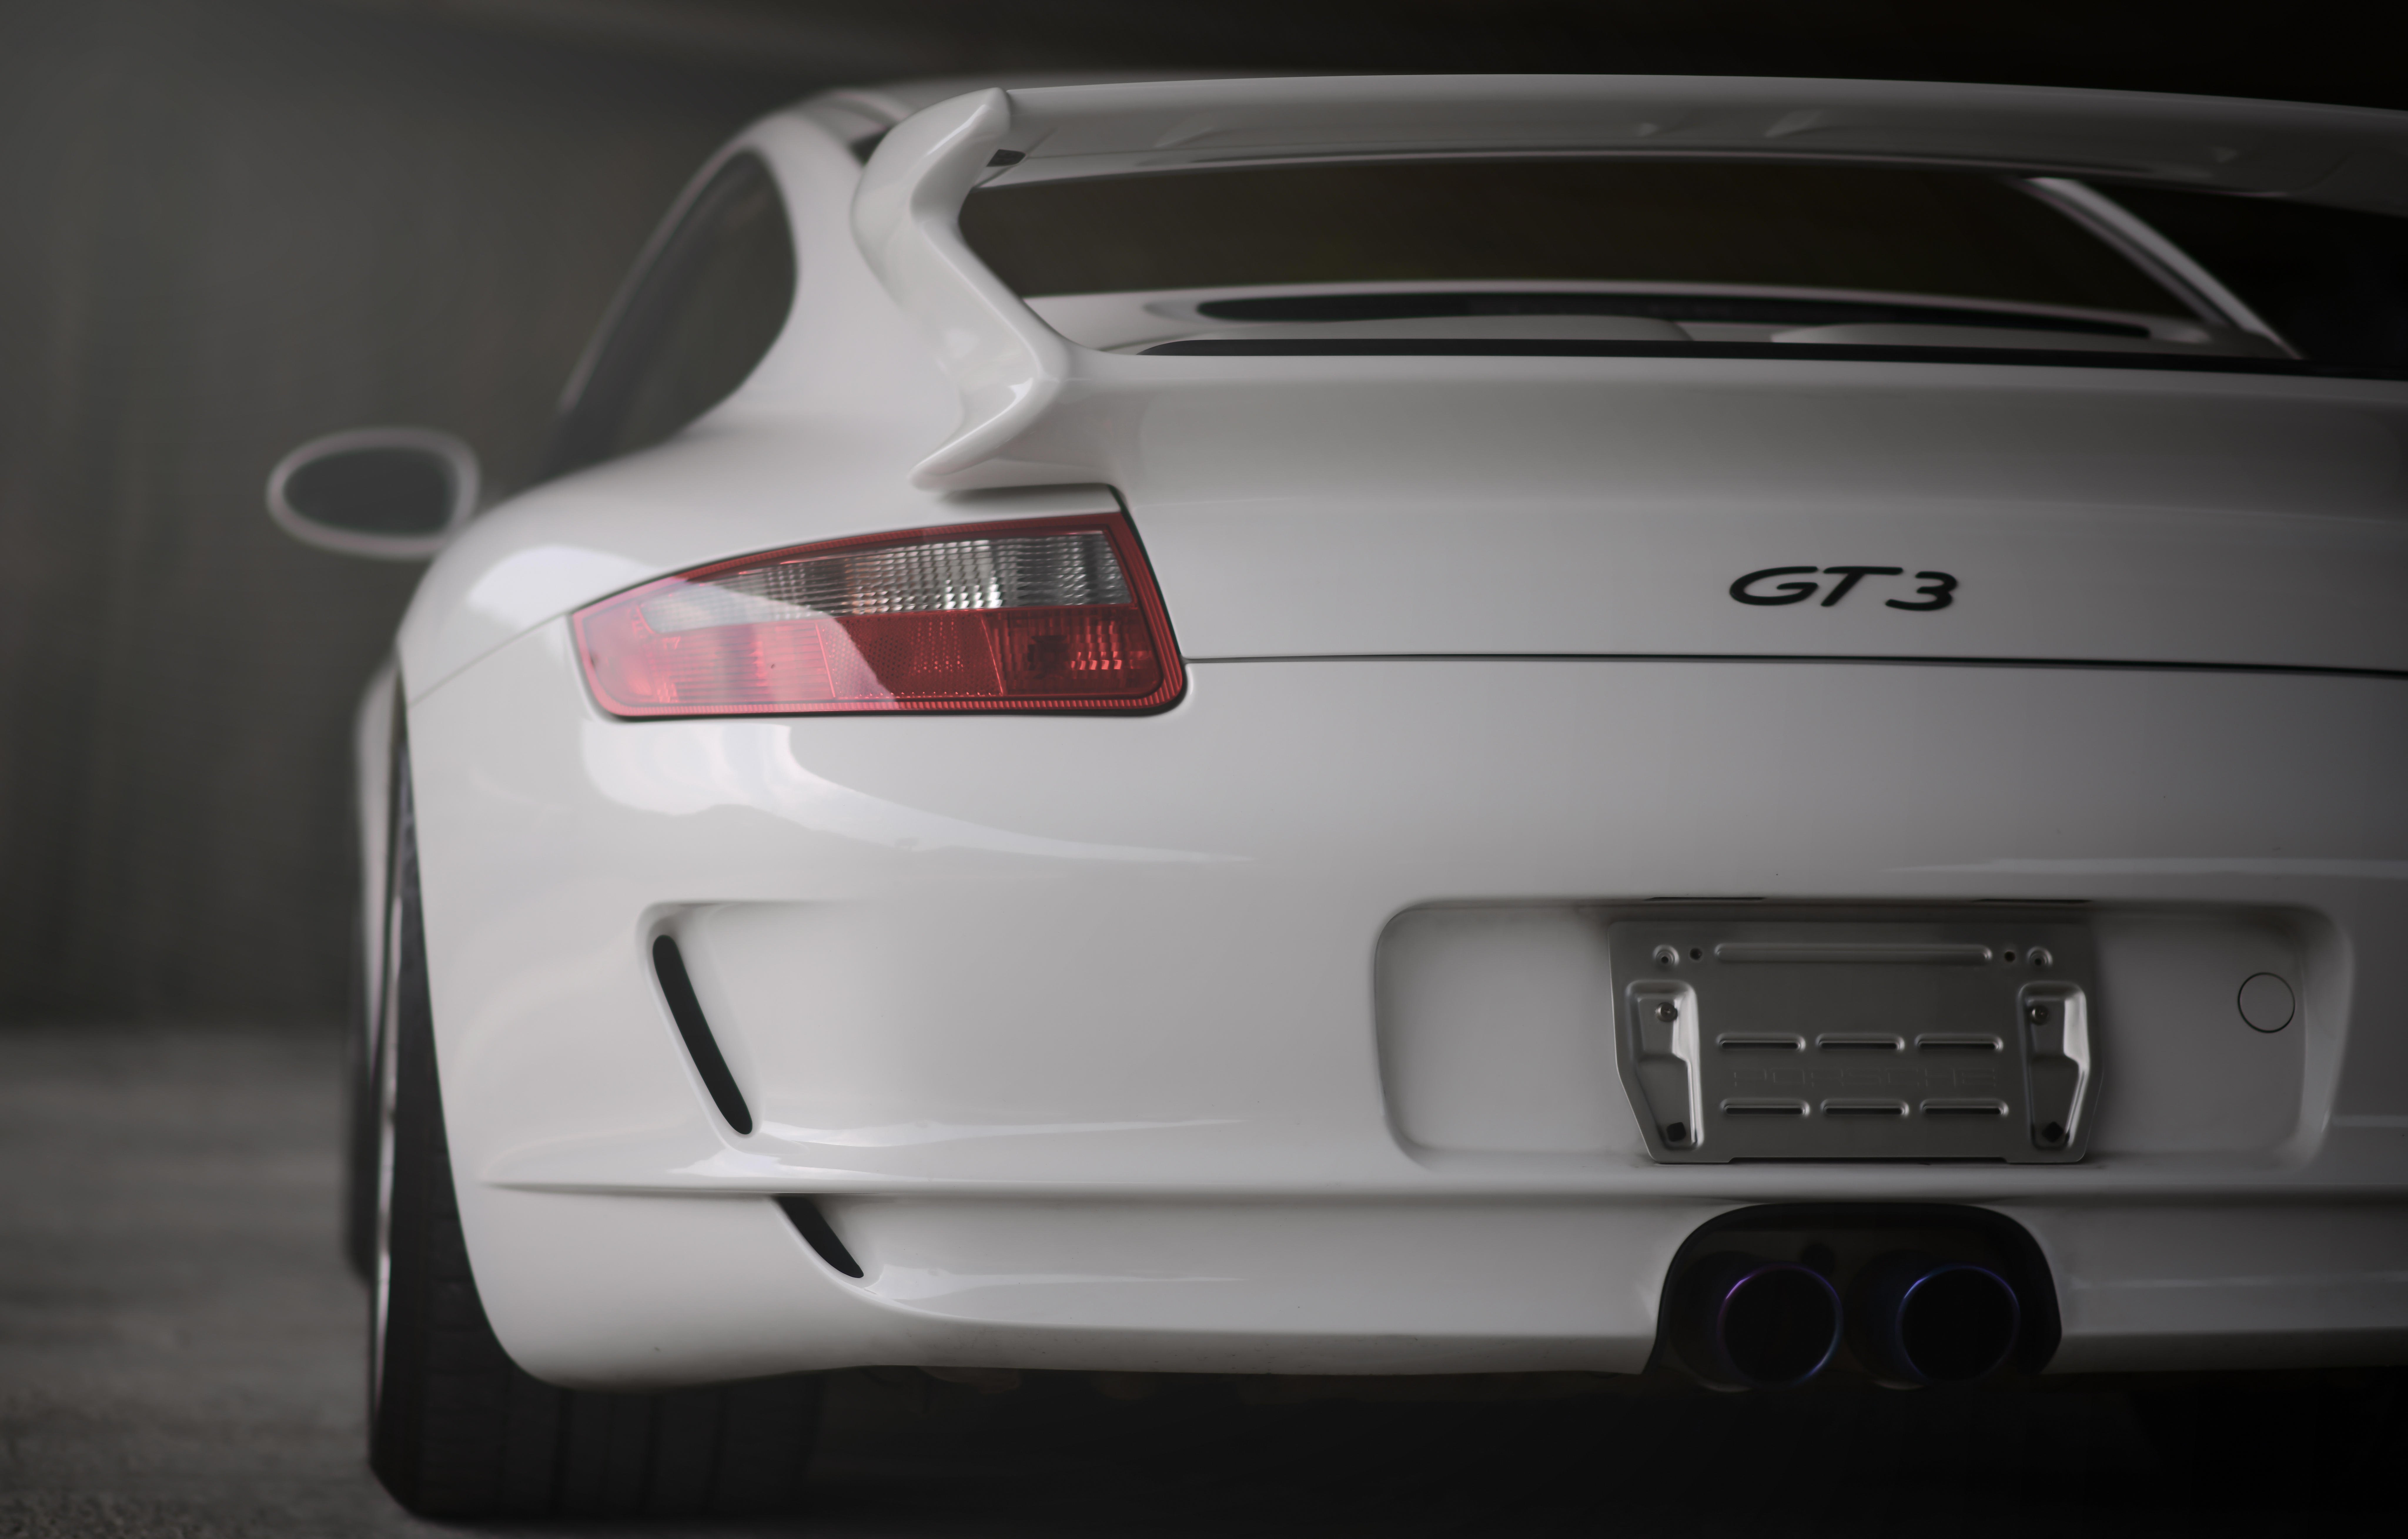 1080p Porsche Gt3 Hd Images